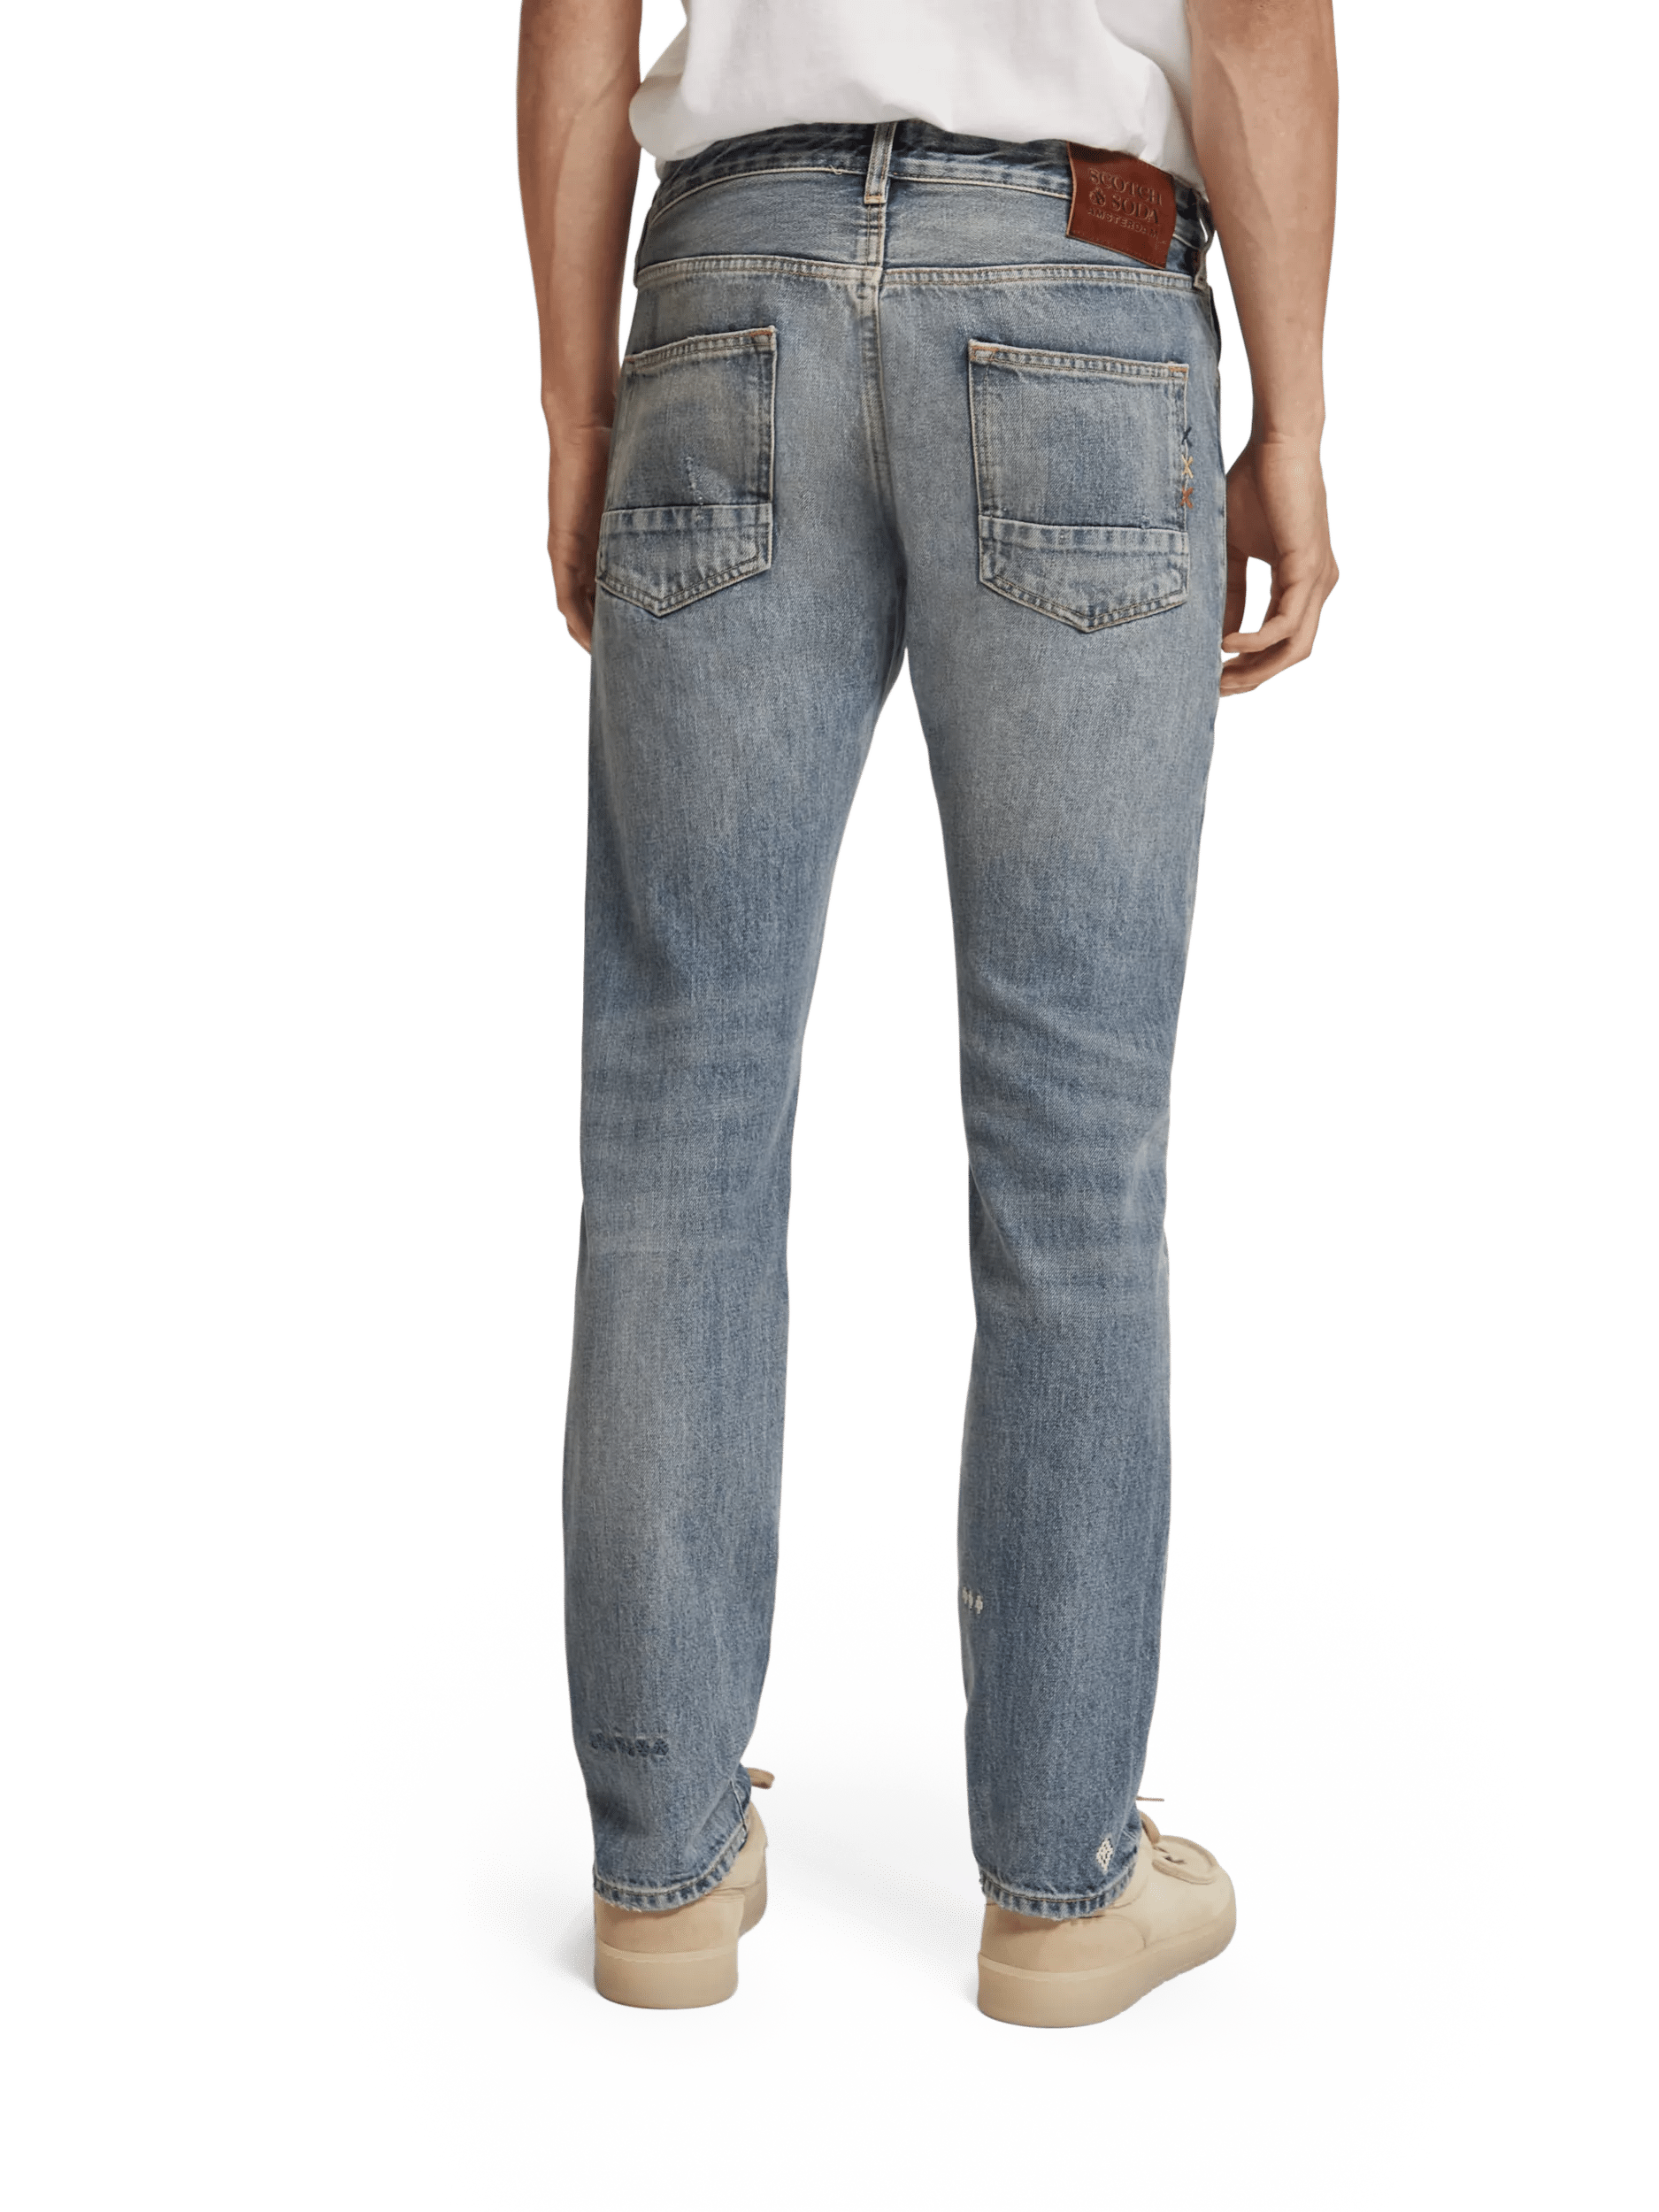 Scotch & Soda Die Premium-Jeans „Ralston“ im regulären Slim-Fit FIT-BCK